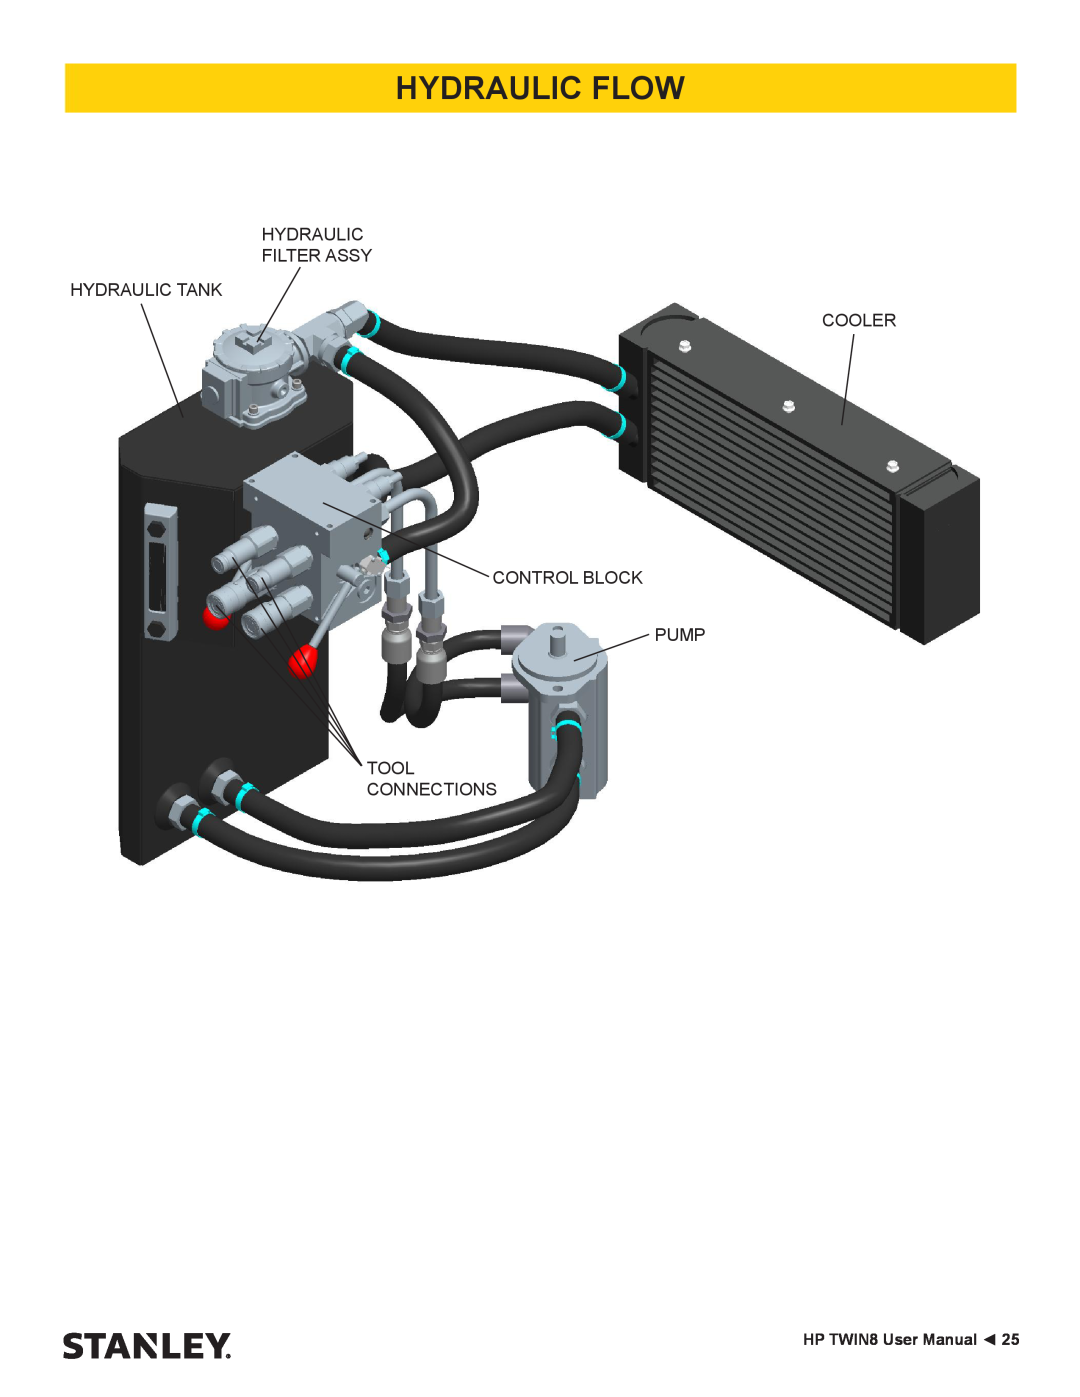 Stanley Black & Decker HP TWIN8 manual Hydraulic Flow, Hydraulic Filter Assy Hydraulic Tank Cooler Control Block Pump Tool 